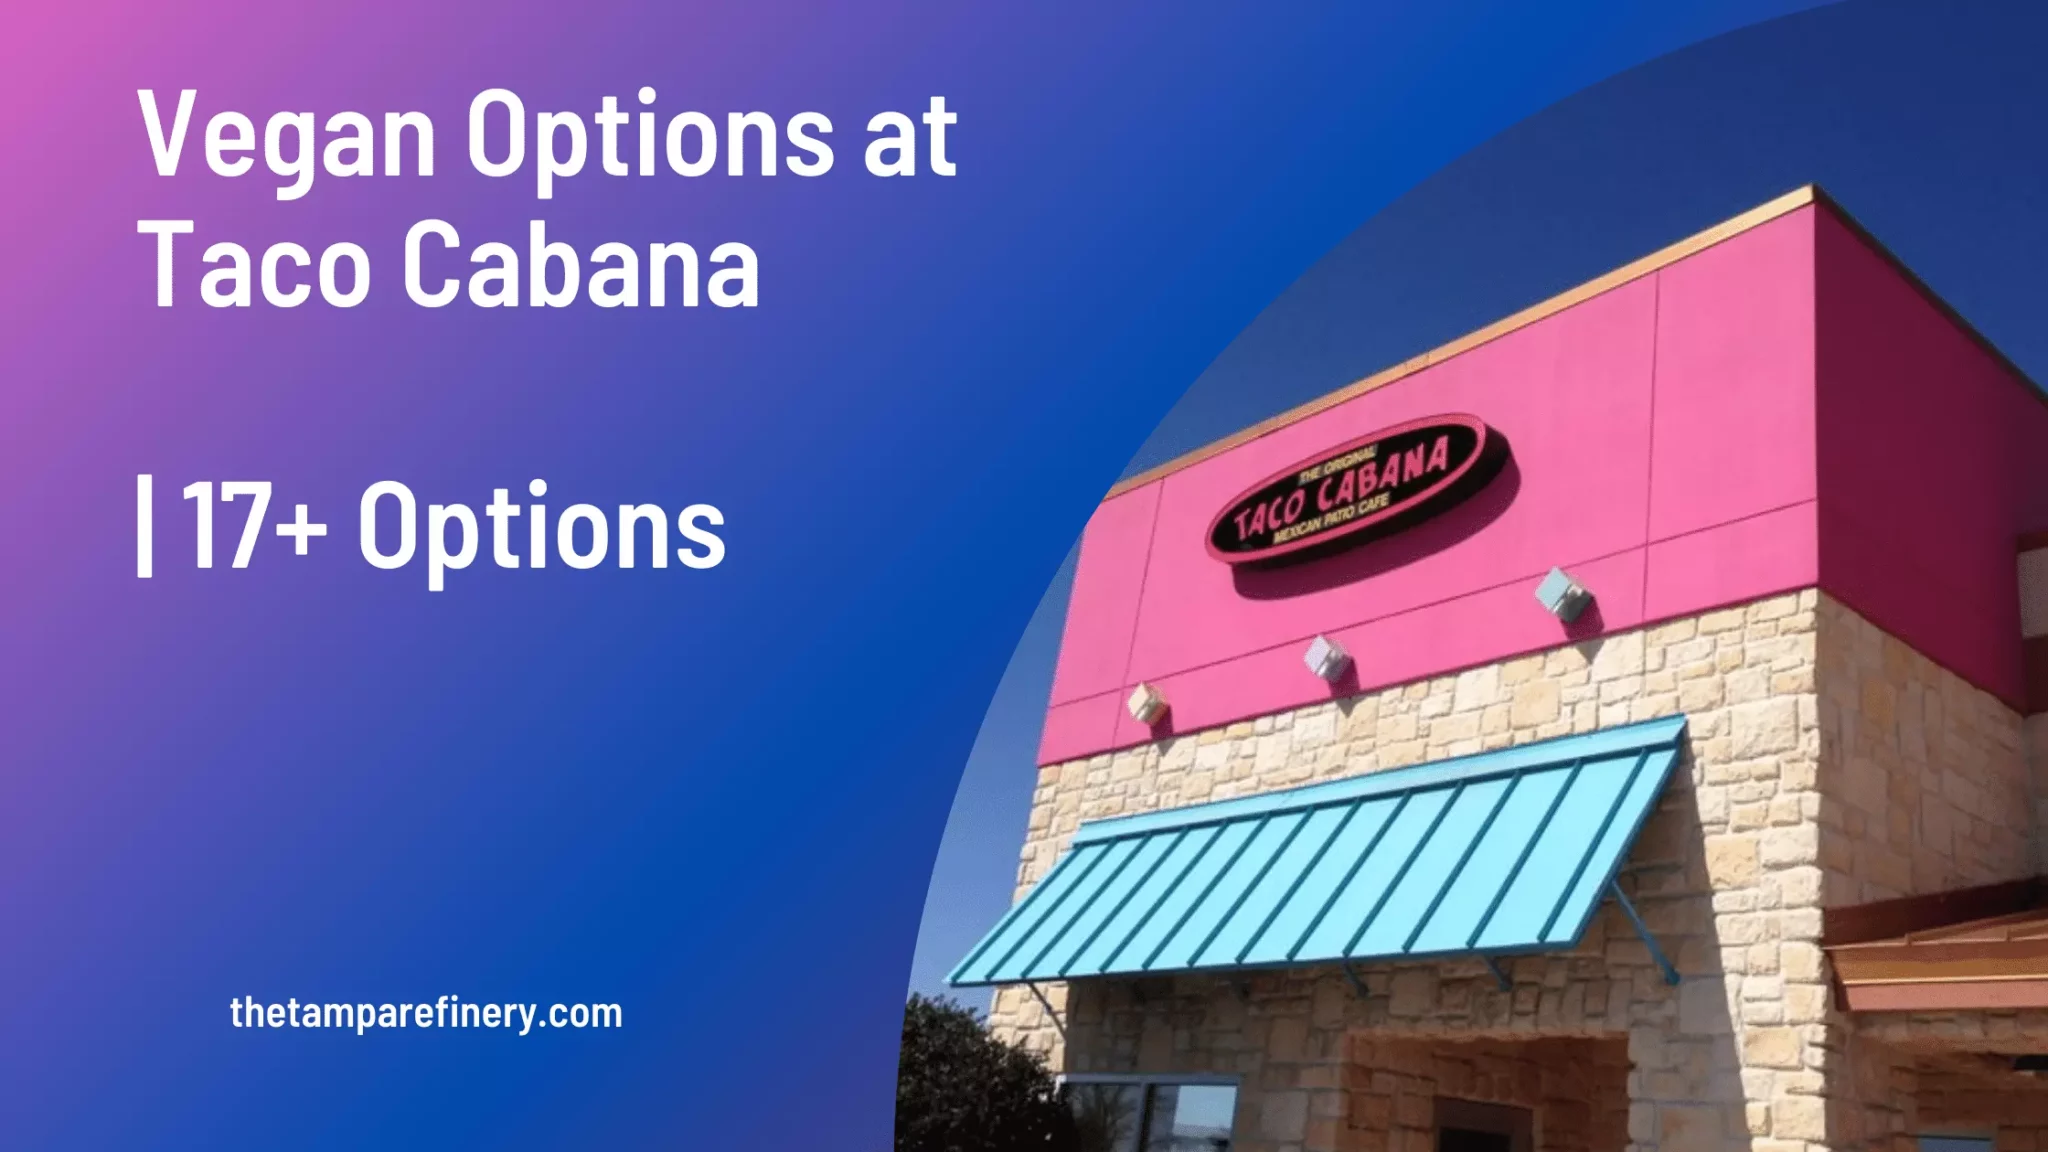 Vegan Options at Taco Cabana